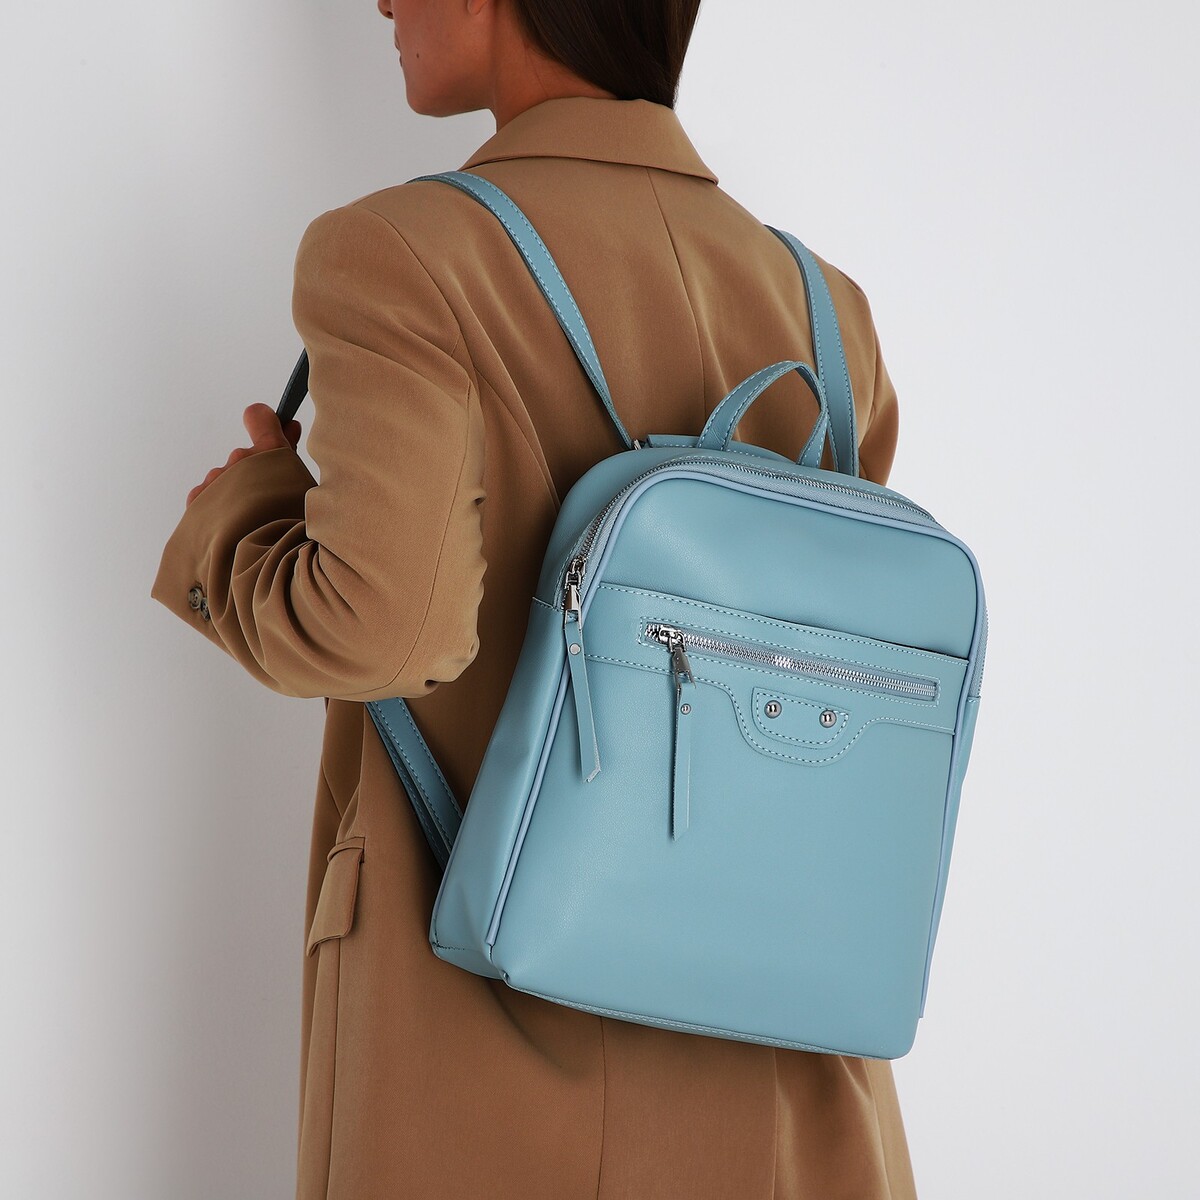 Рюкзак женский из искусственной кожи на молнии, 3 кармана, цвет голубой рюкзак женский из искусственной кожи на молнии 2 кармана белый